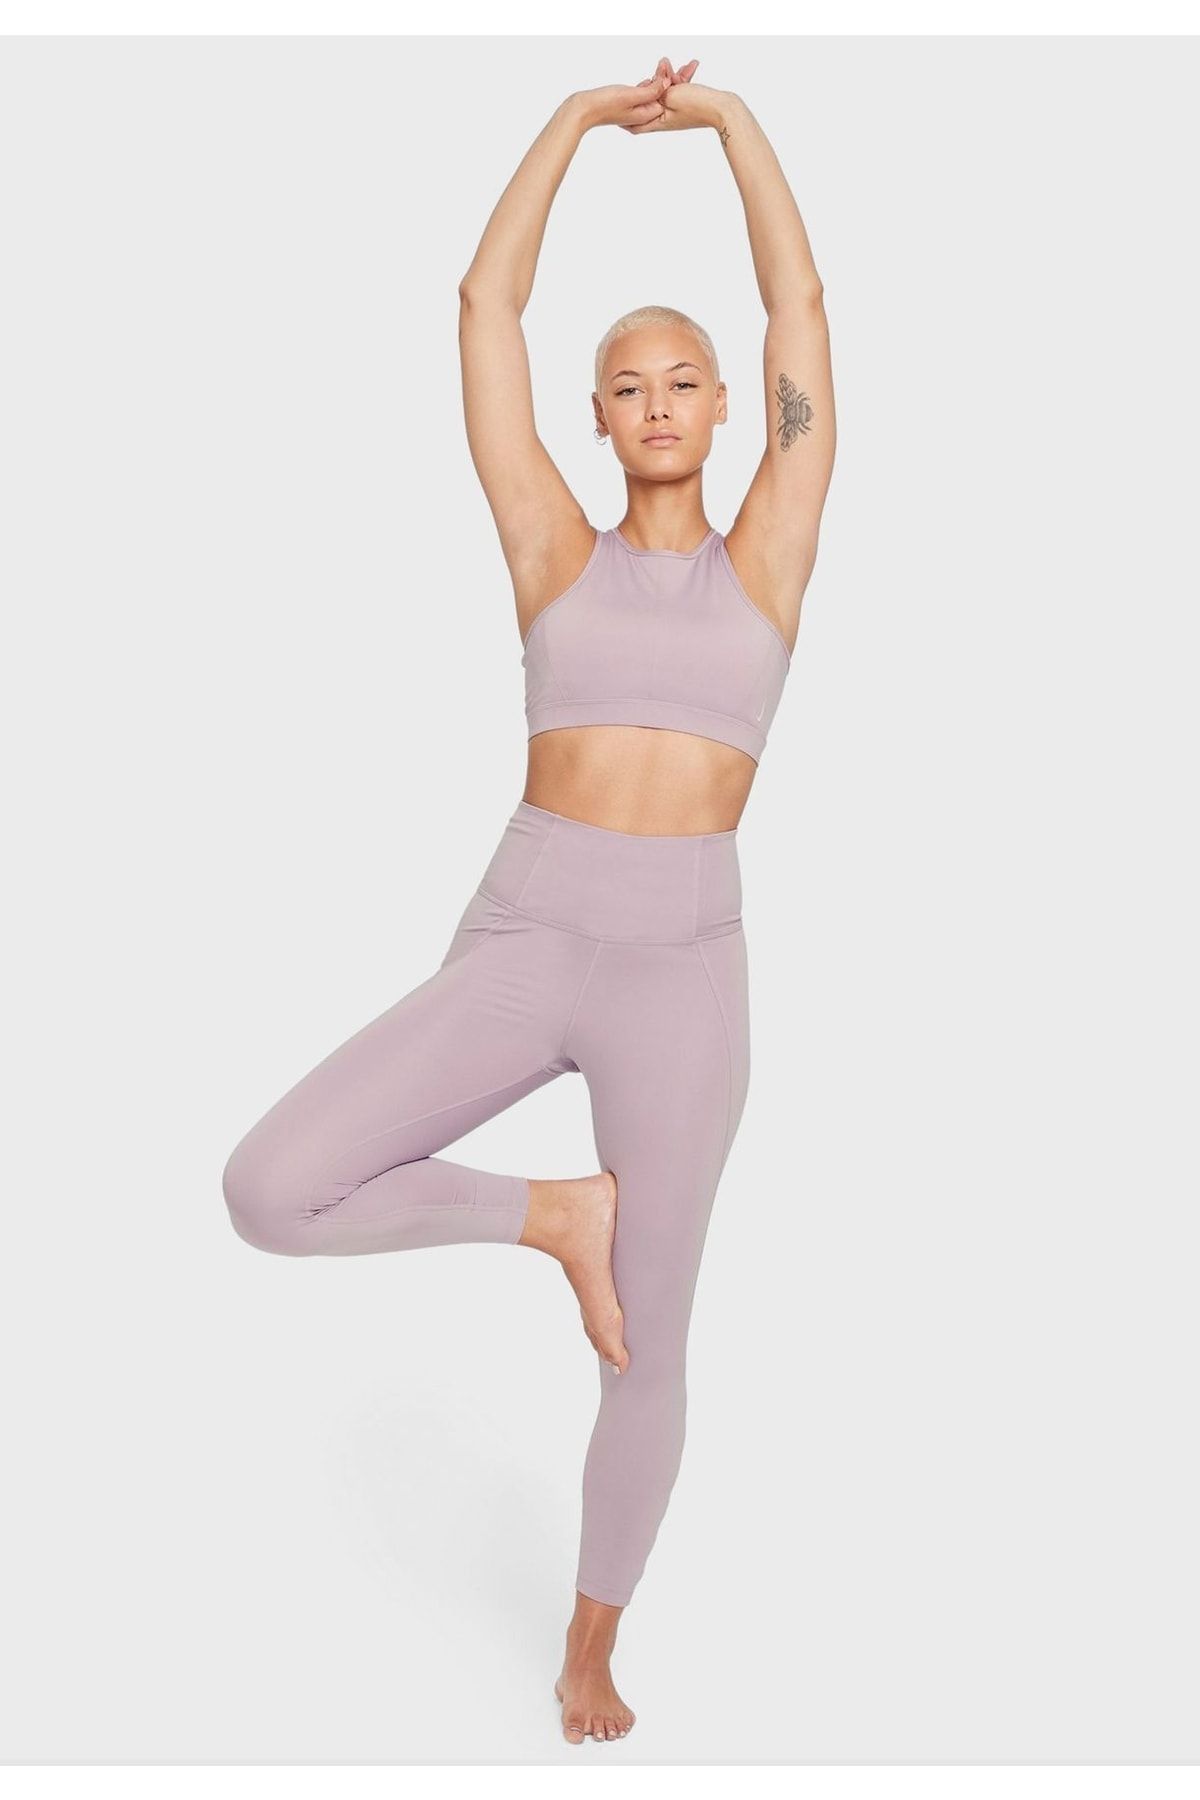 Nike Yoga Dri-fit High-waisted 7/8 Cut-out Kadın Tayt - Mor